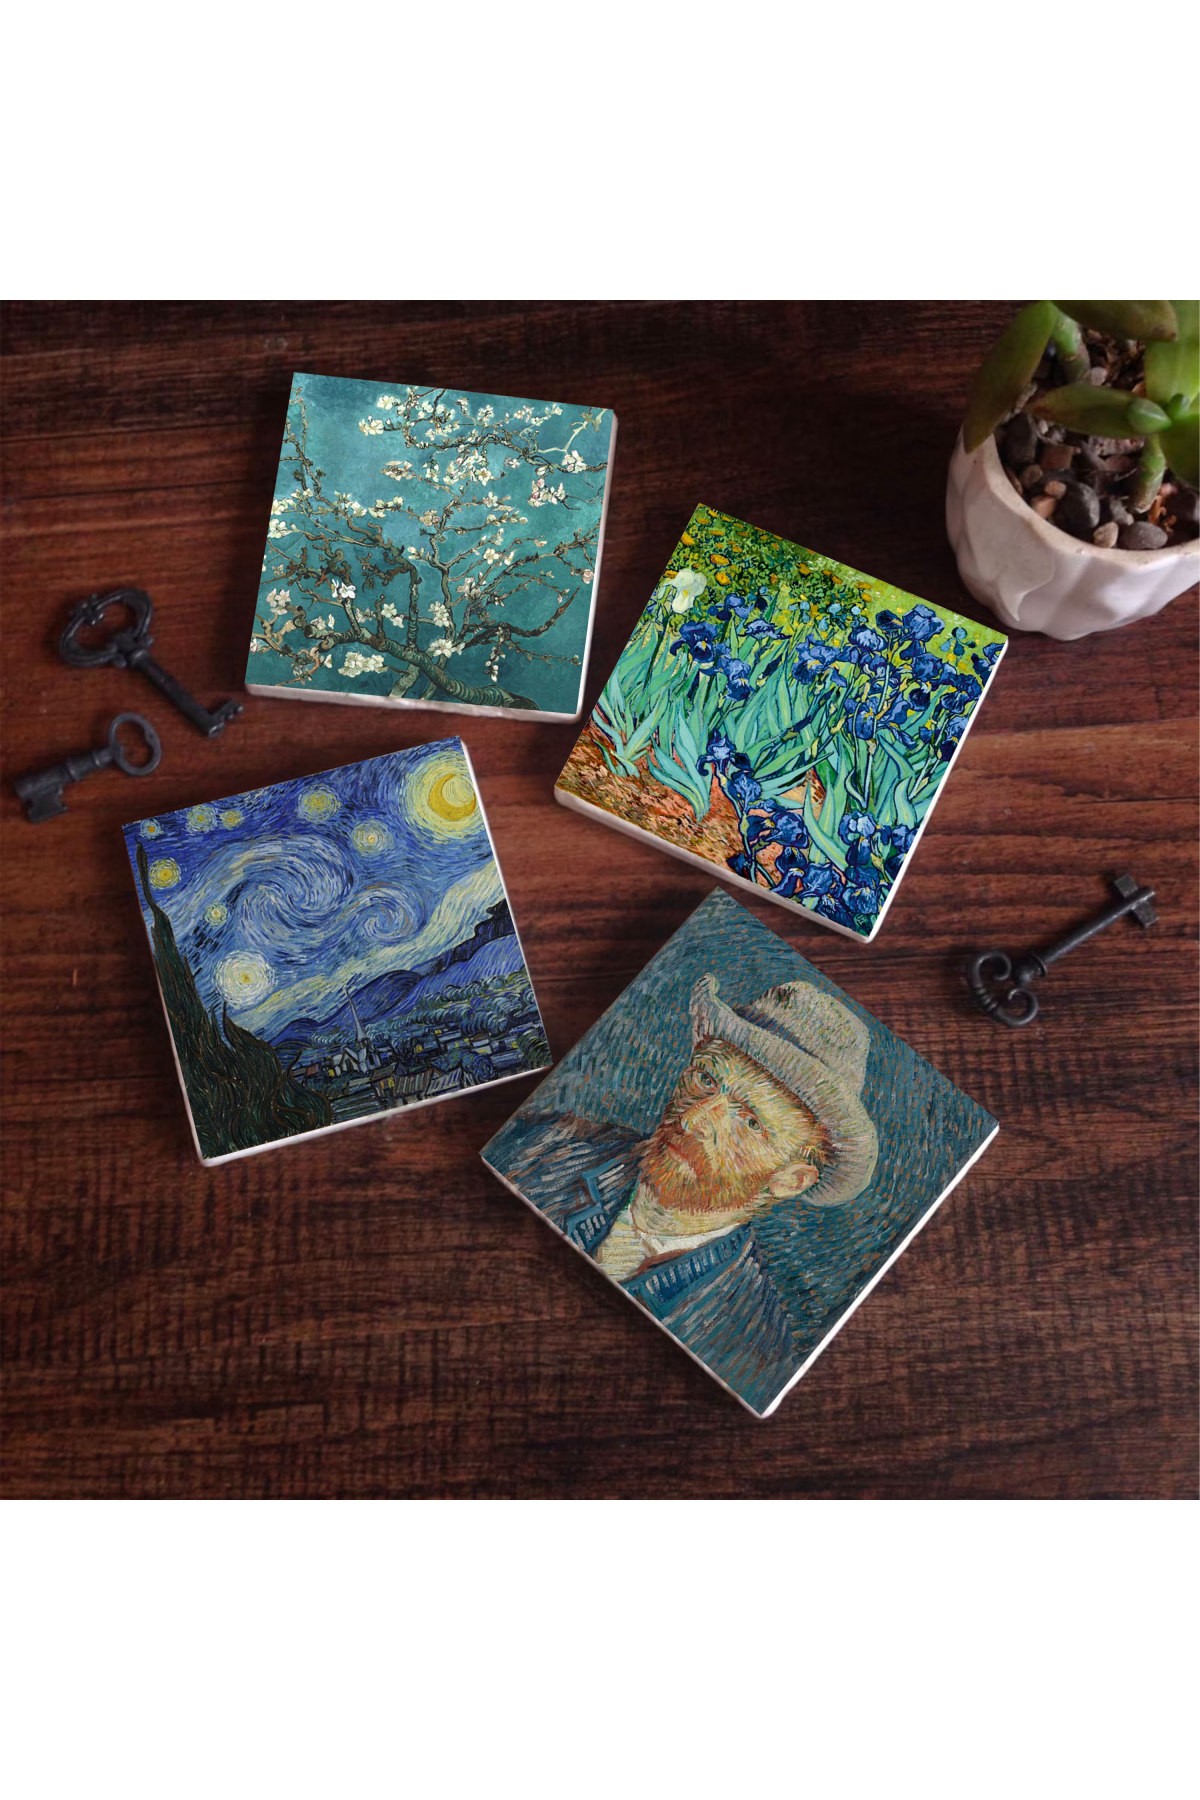 Van Gogh İrisler, Yıldızlı Gece, Badem Ağacı, Otoportre Taş Bardak Altlığı Masaüstü Koruyucu Altlık 4 Parça Set 10x10cm Stone Coasters